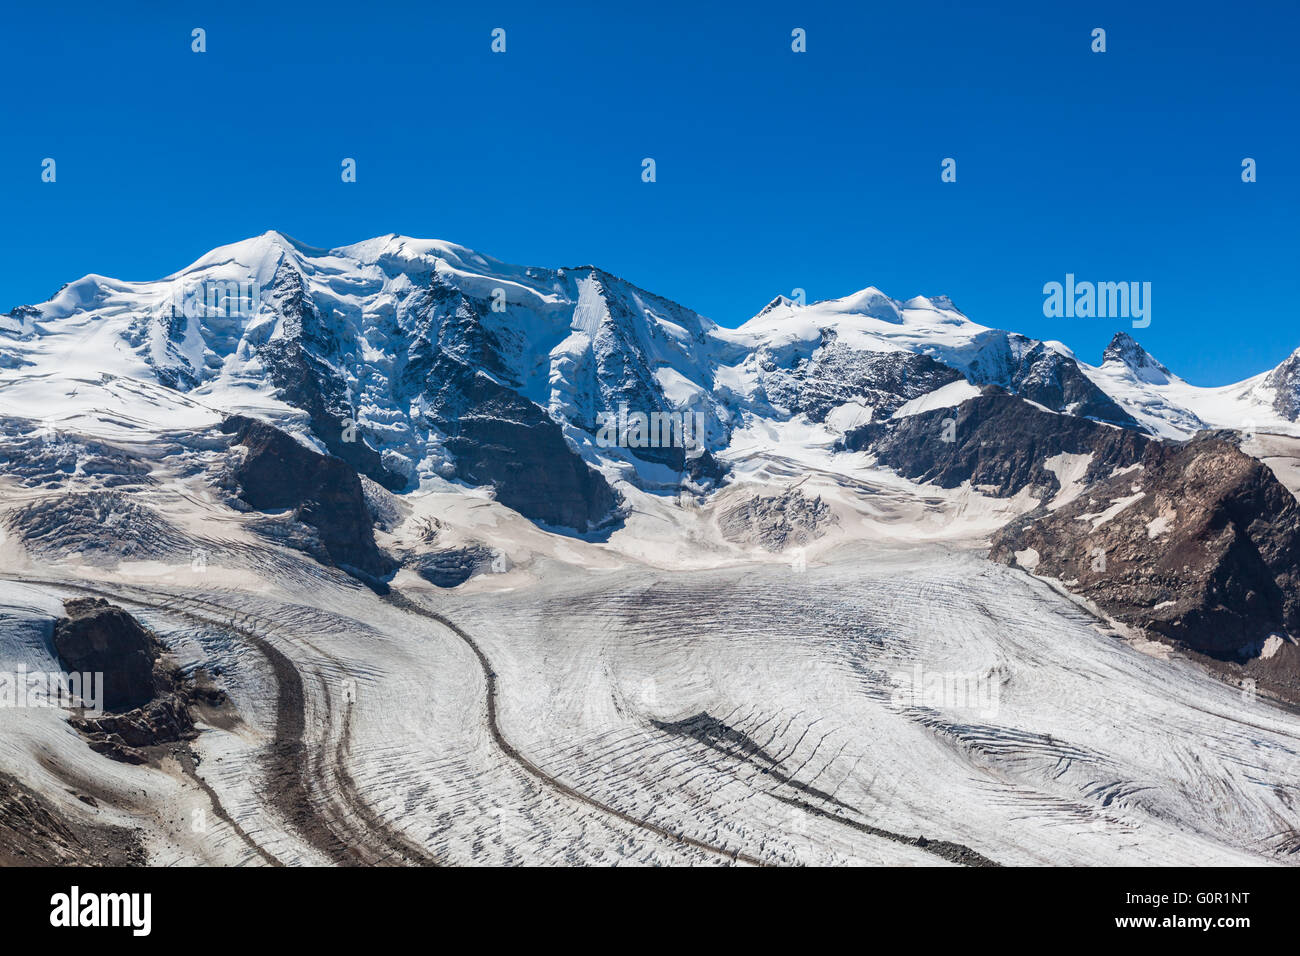 Atemberaubende Aussicht auf die Bernina-Massiv und Morteratsch-Gletscher  auf das Berghaus Diavolezza in Engadiner Gegend der Schweiz Stockfotografie  - Alamy